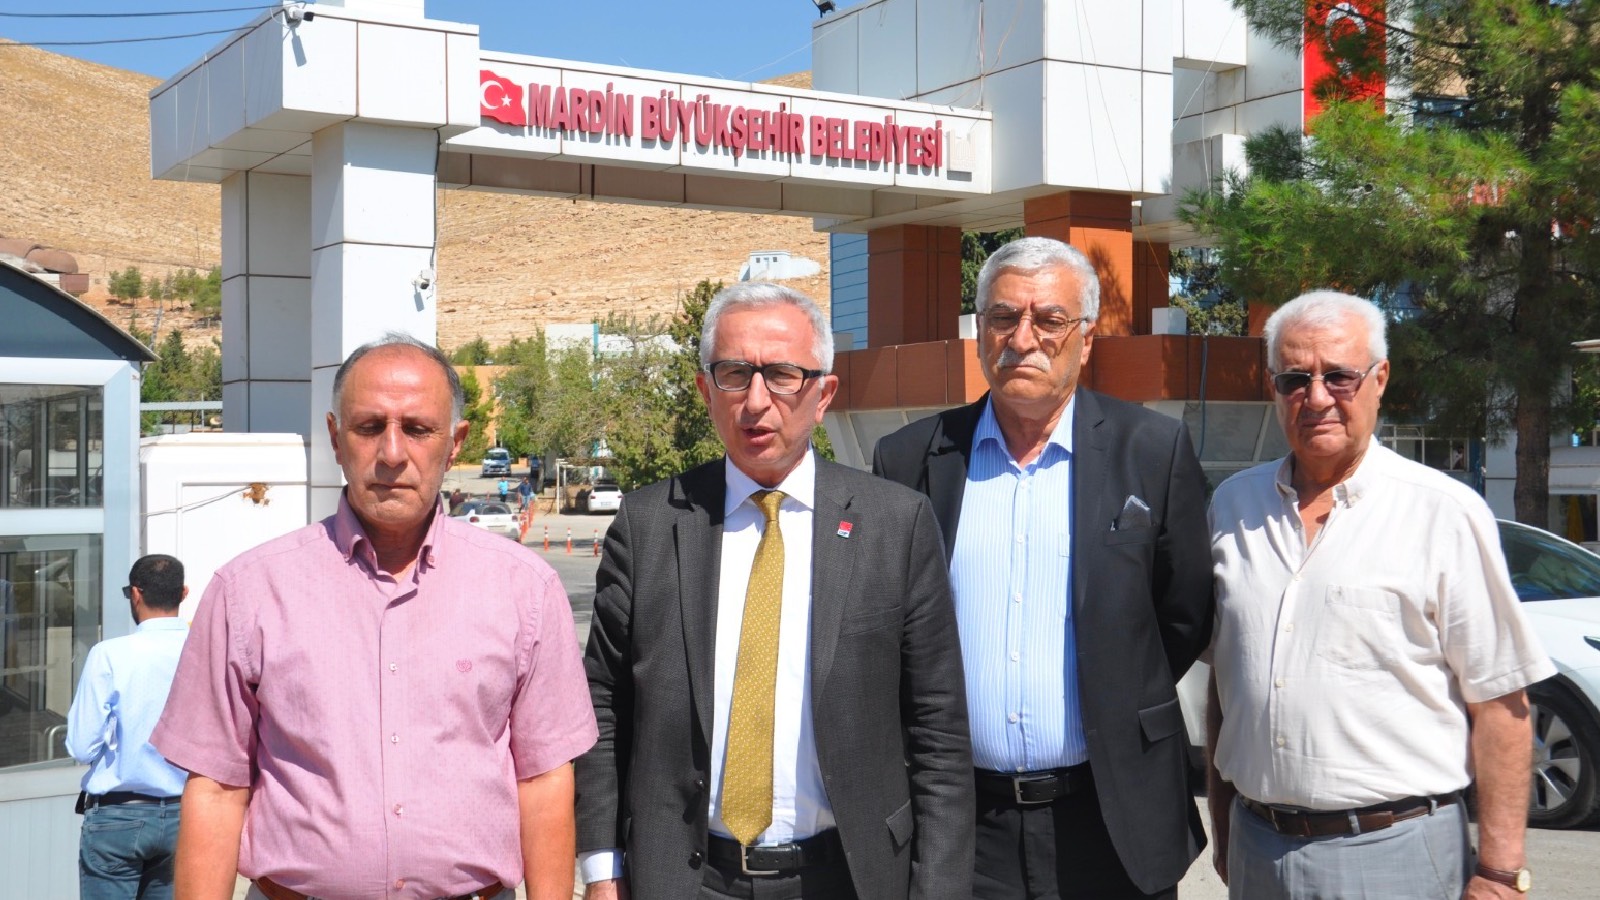 CHP Vilayet ve İlçe örgütleri, Mardin’de kayyum atanan belediyelerin hesap cetvellerini talep etti